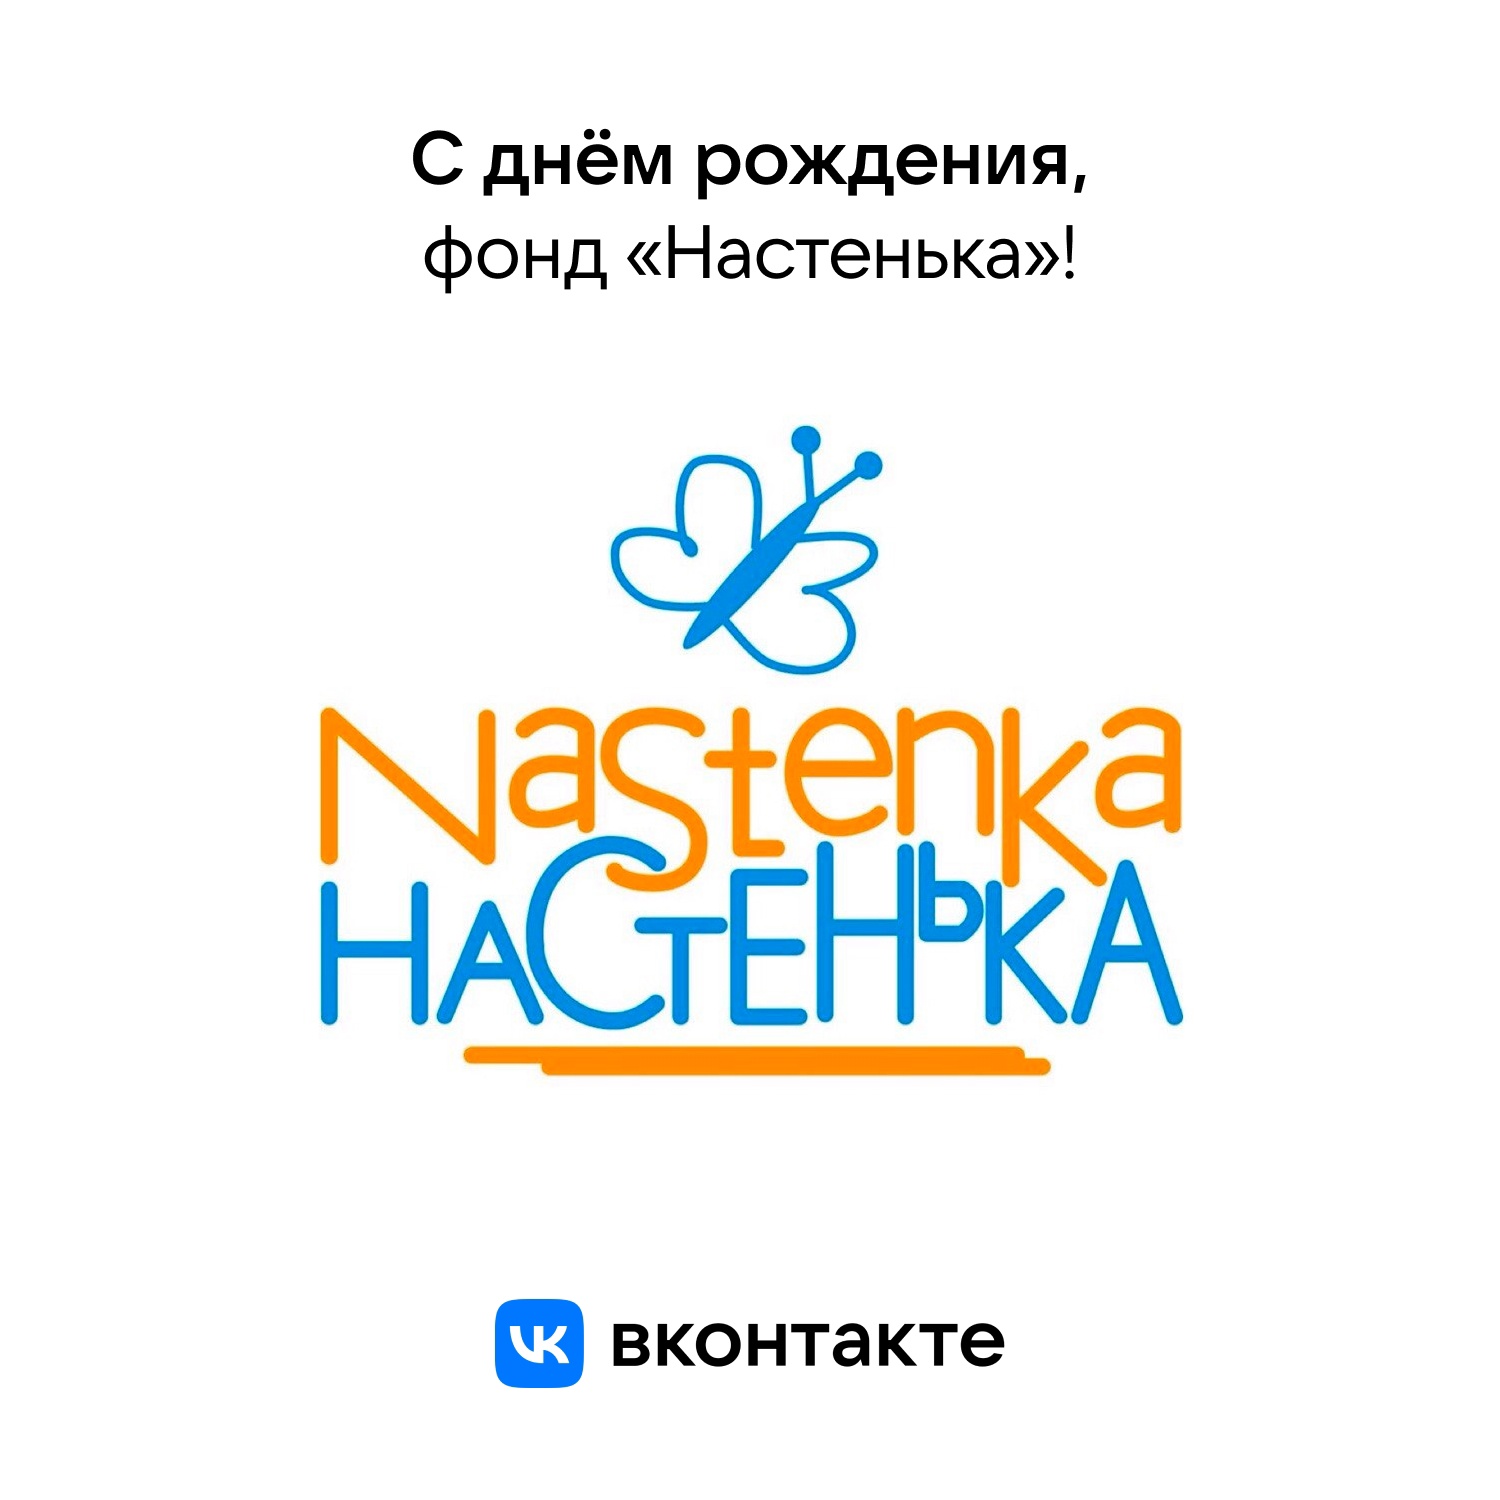 Сегодня благотворительному фонду «Настенька»……